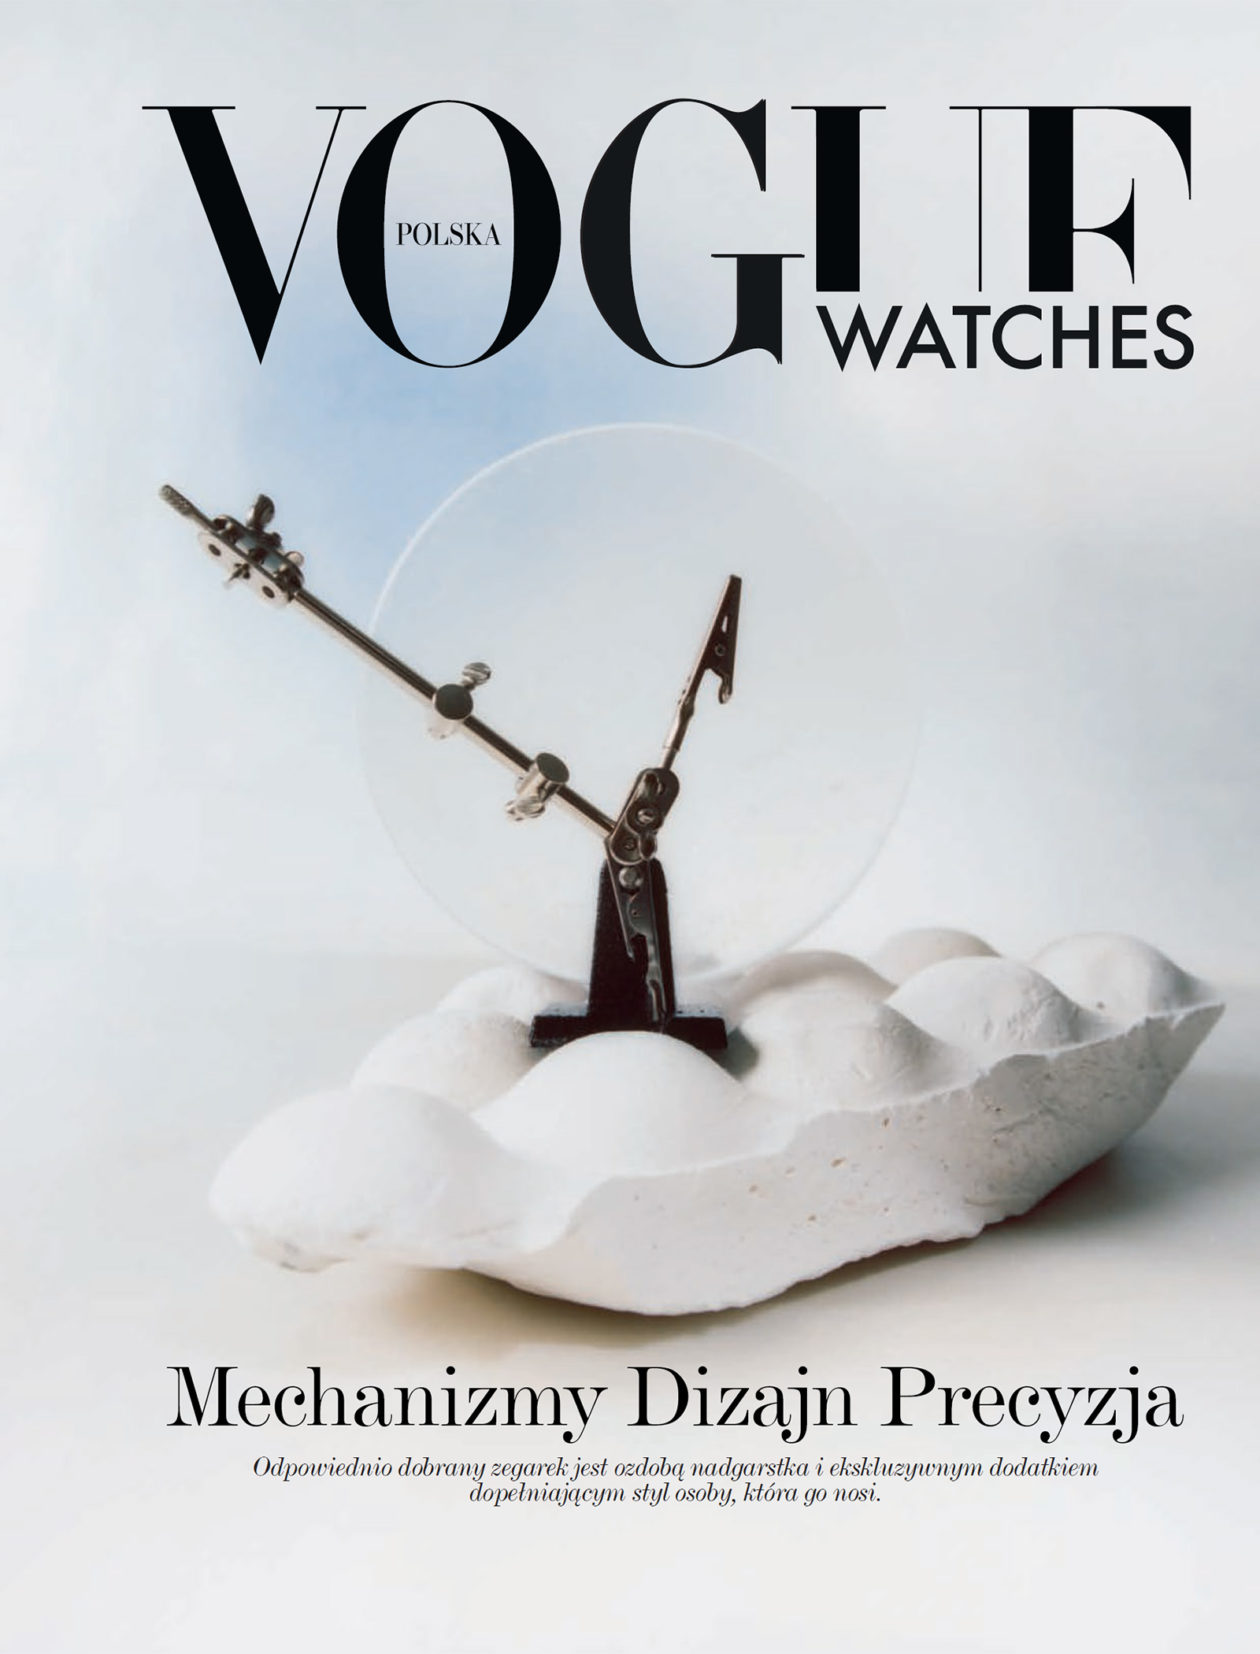 Vogue Polska Watches